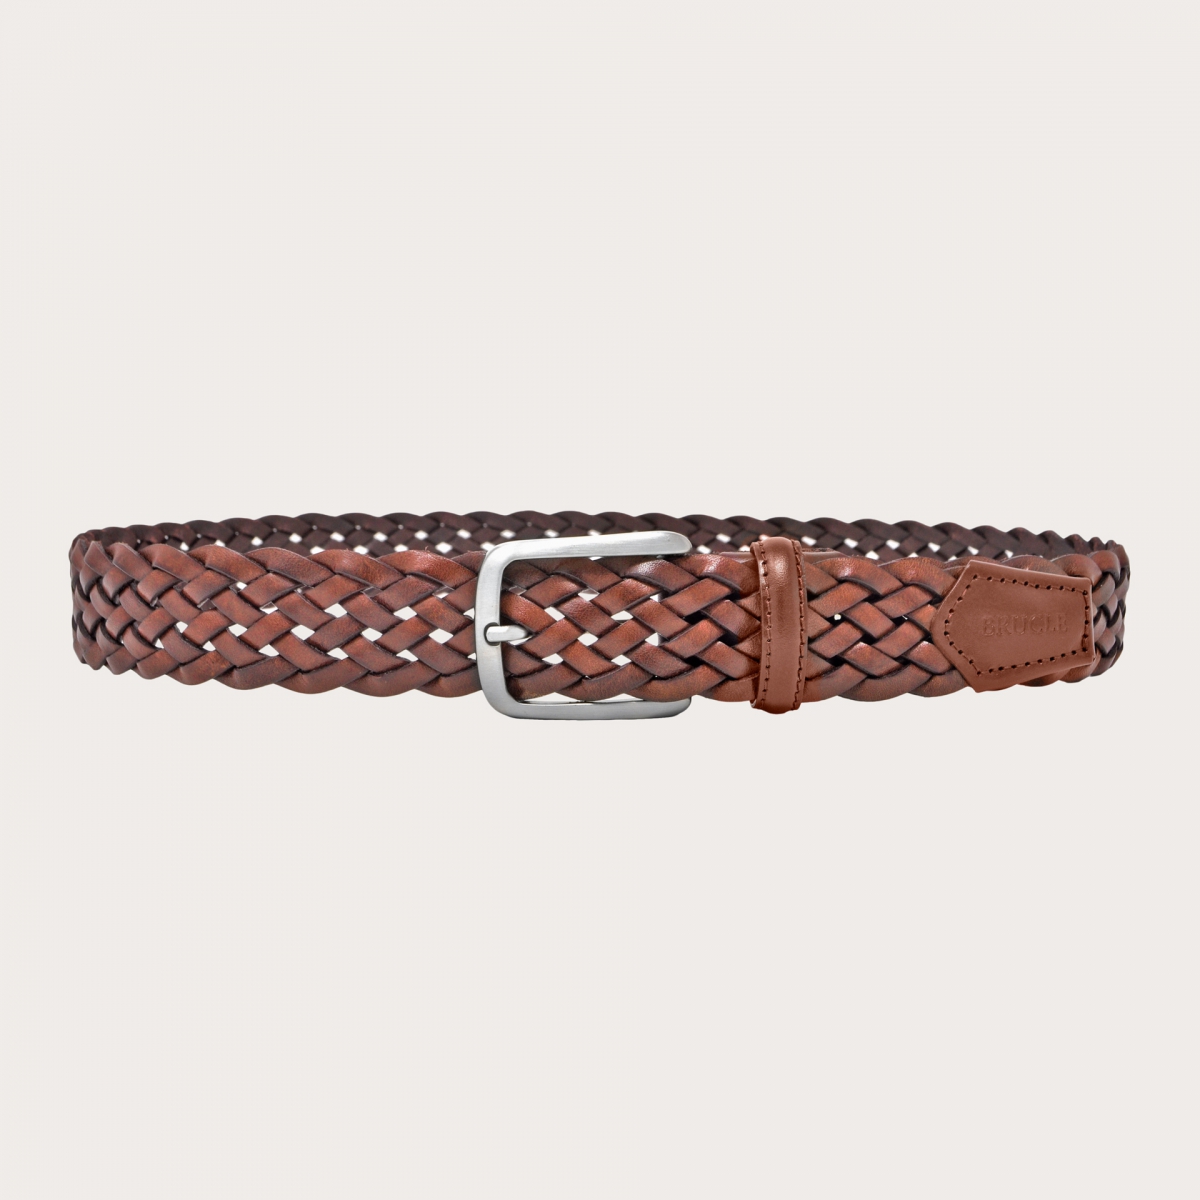 BRUCLE Cinturón de cuero trenzado marrón coñac